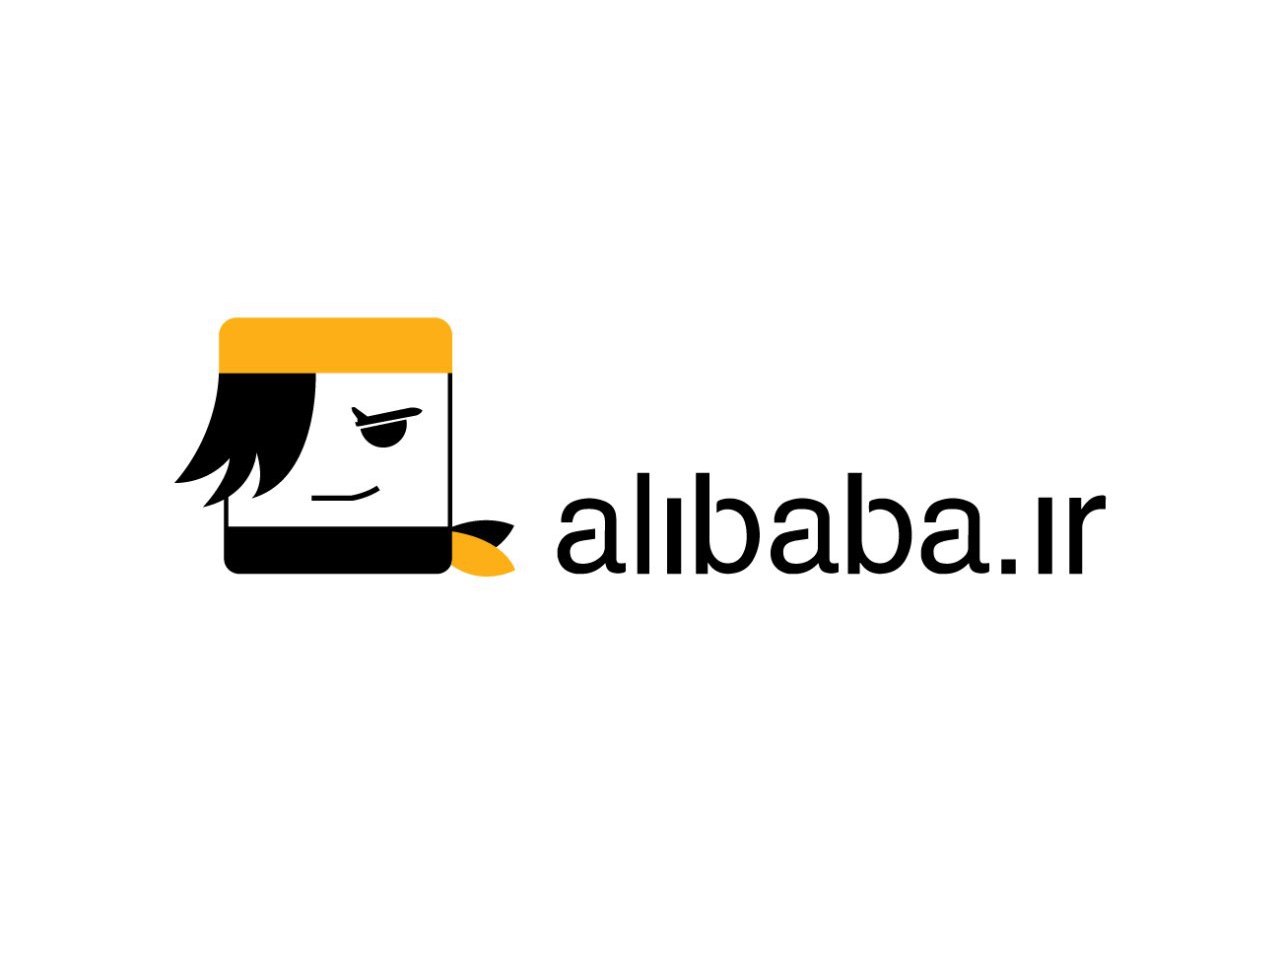 هک تعدادی از سرورهای علی بابا و دسترسی به برخی از اطلاعات کاربران